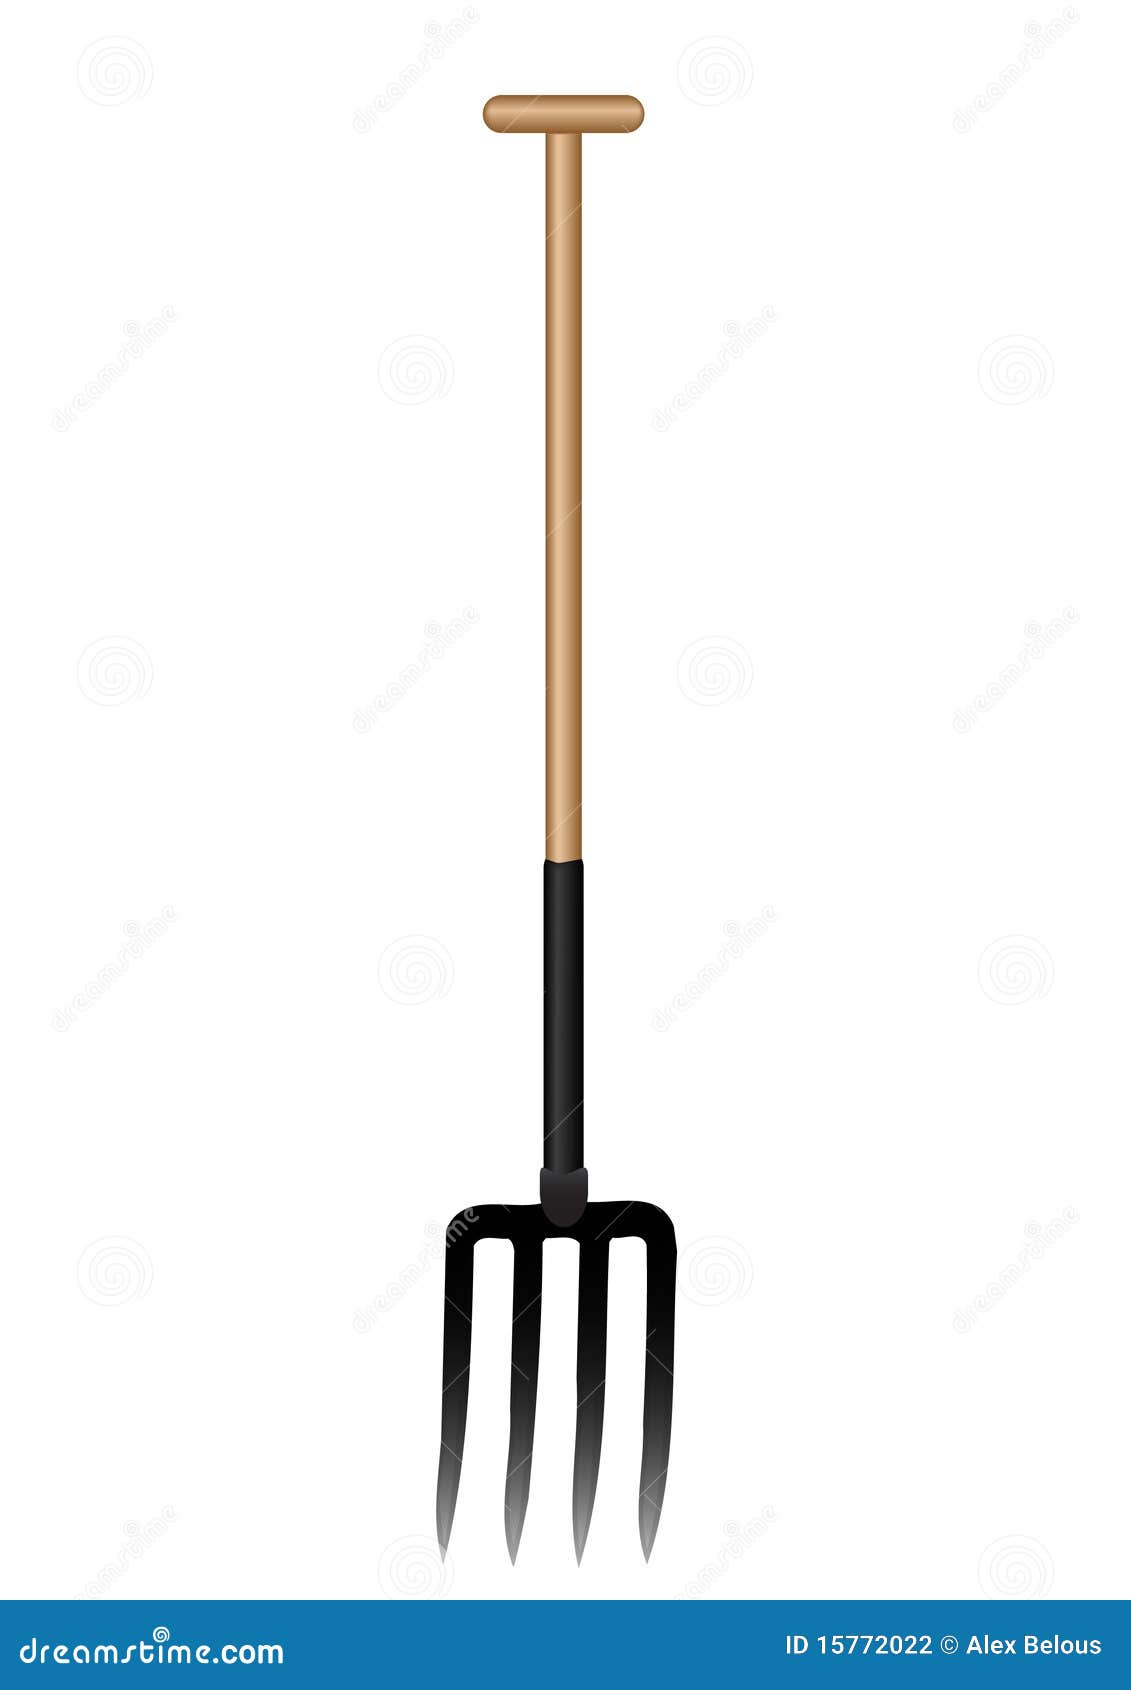   a pitchfork